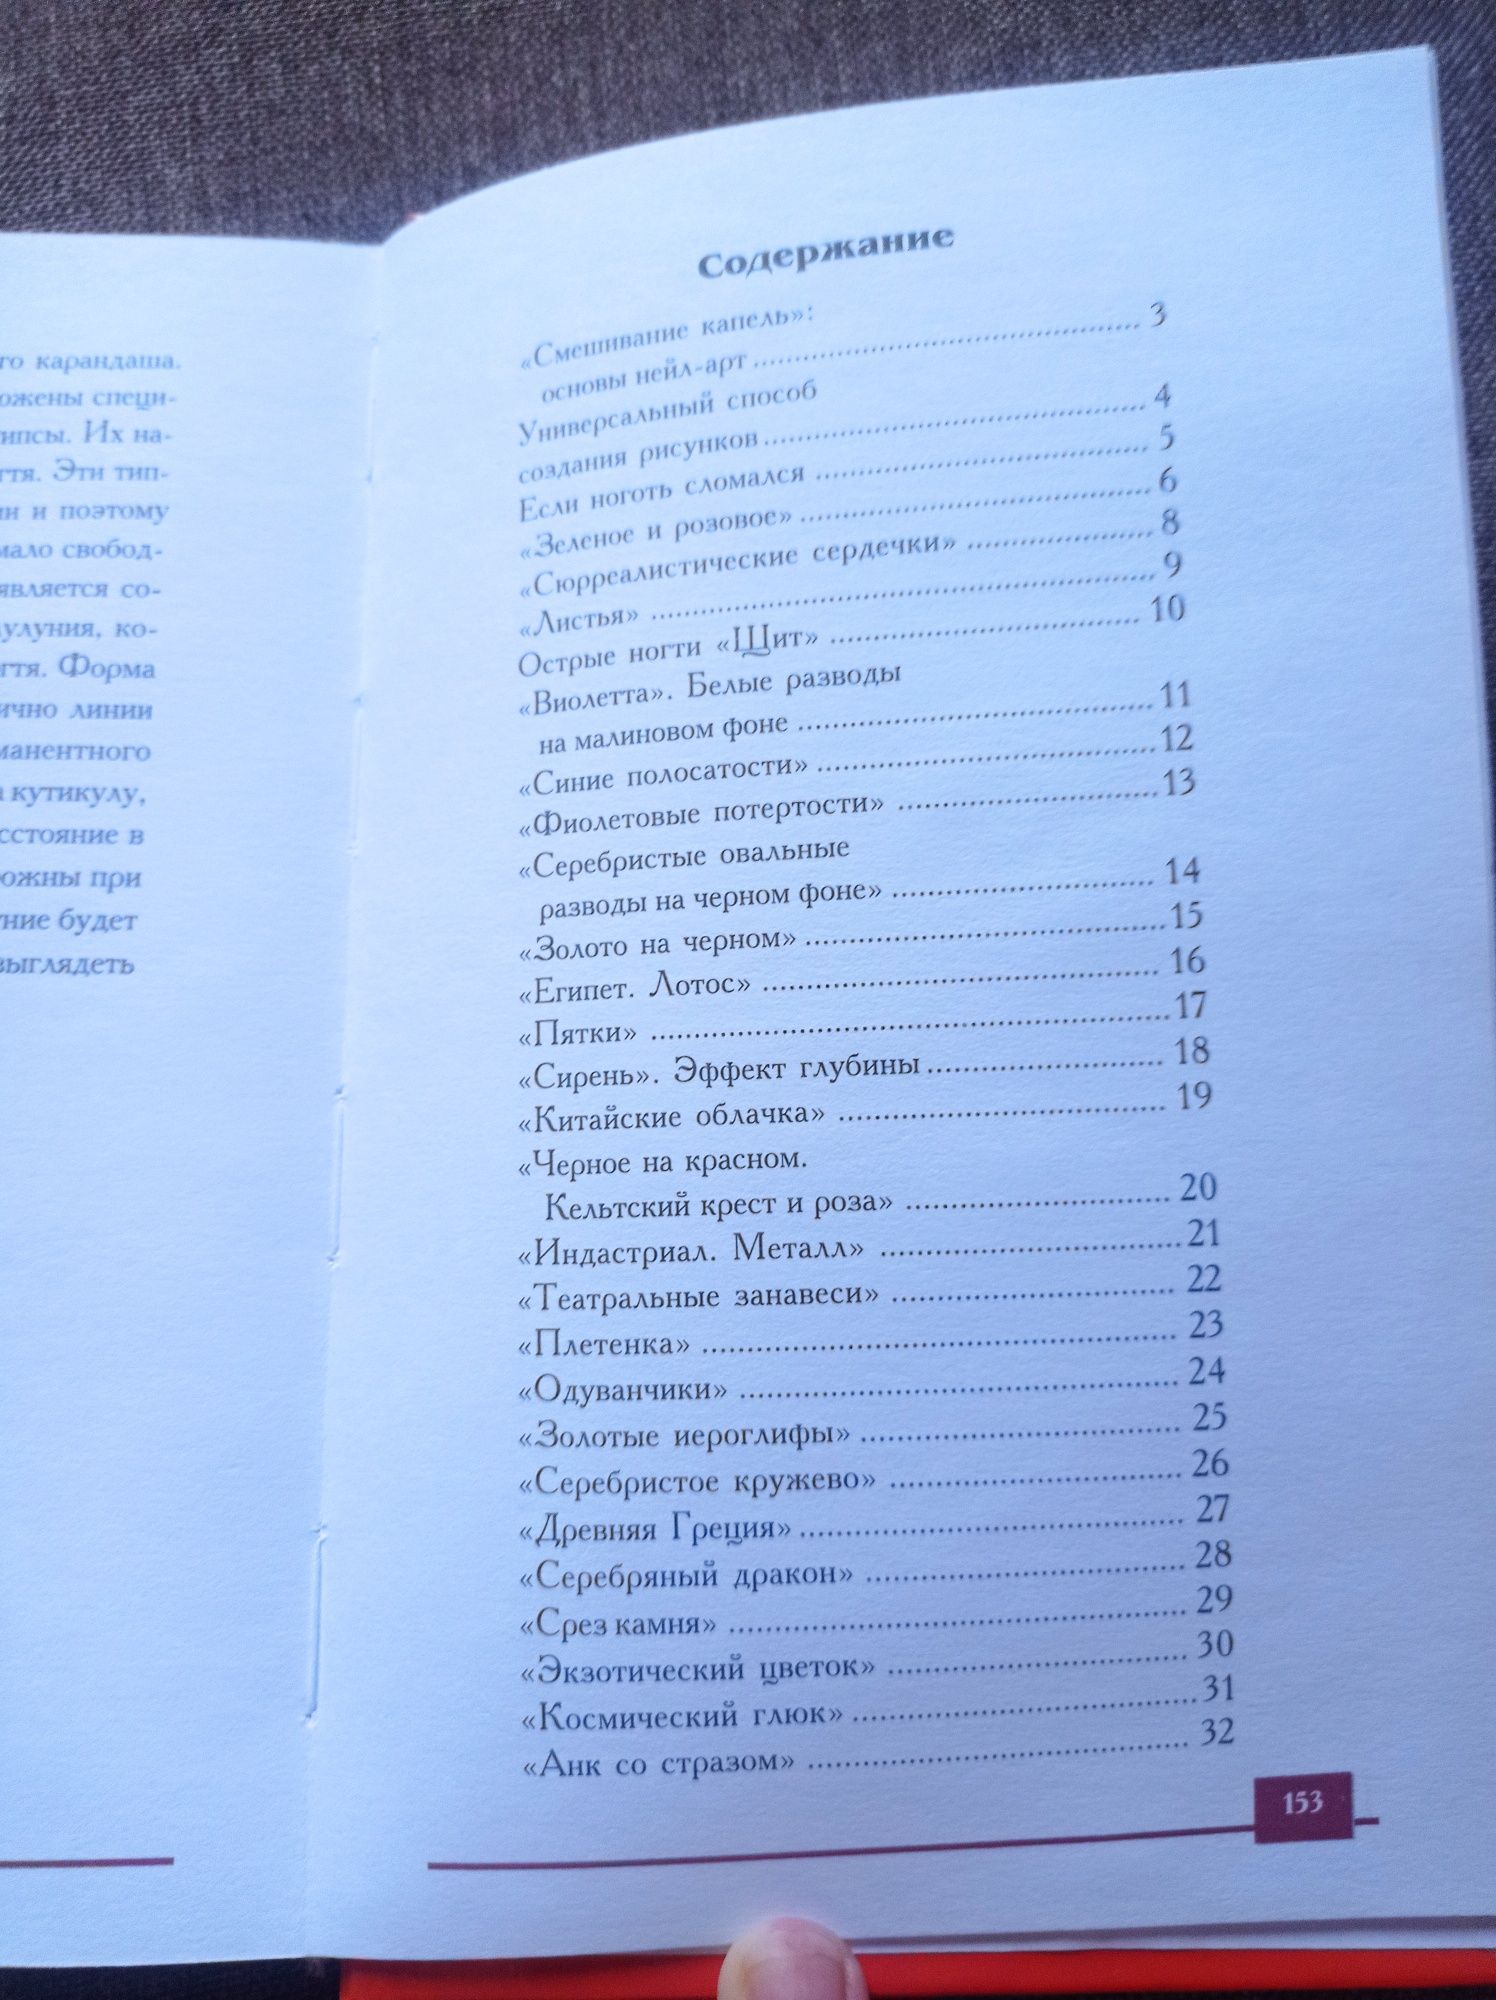 150 вариантов эксклюзивного маникюра Д.С. Букин, О.Н. Петрова